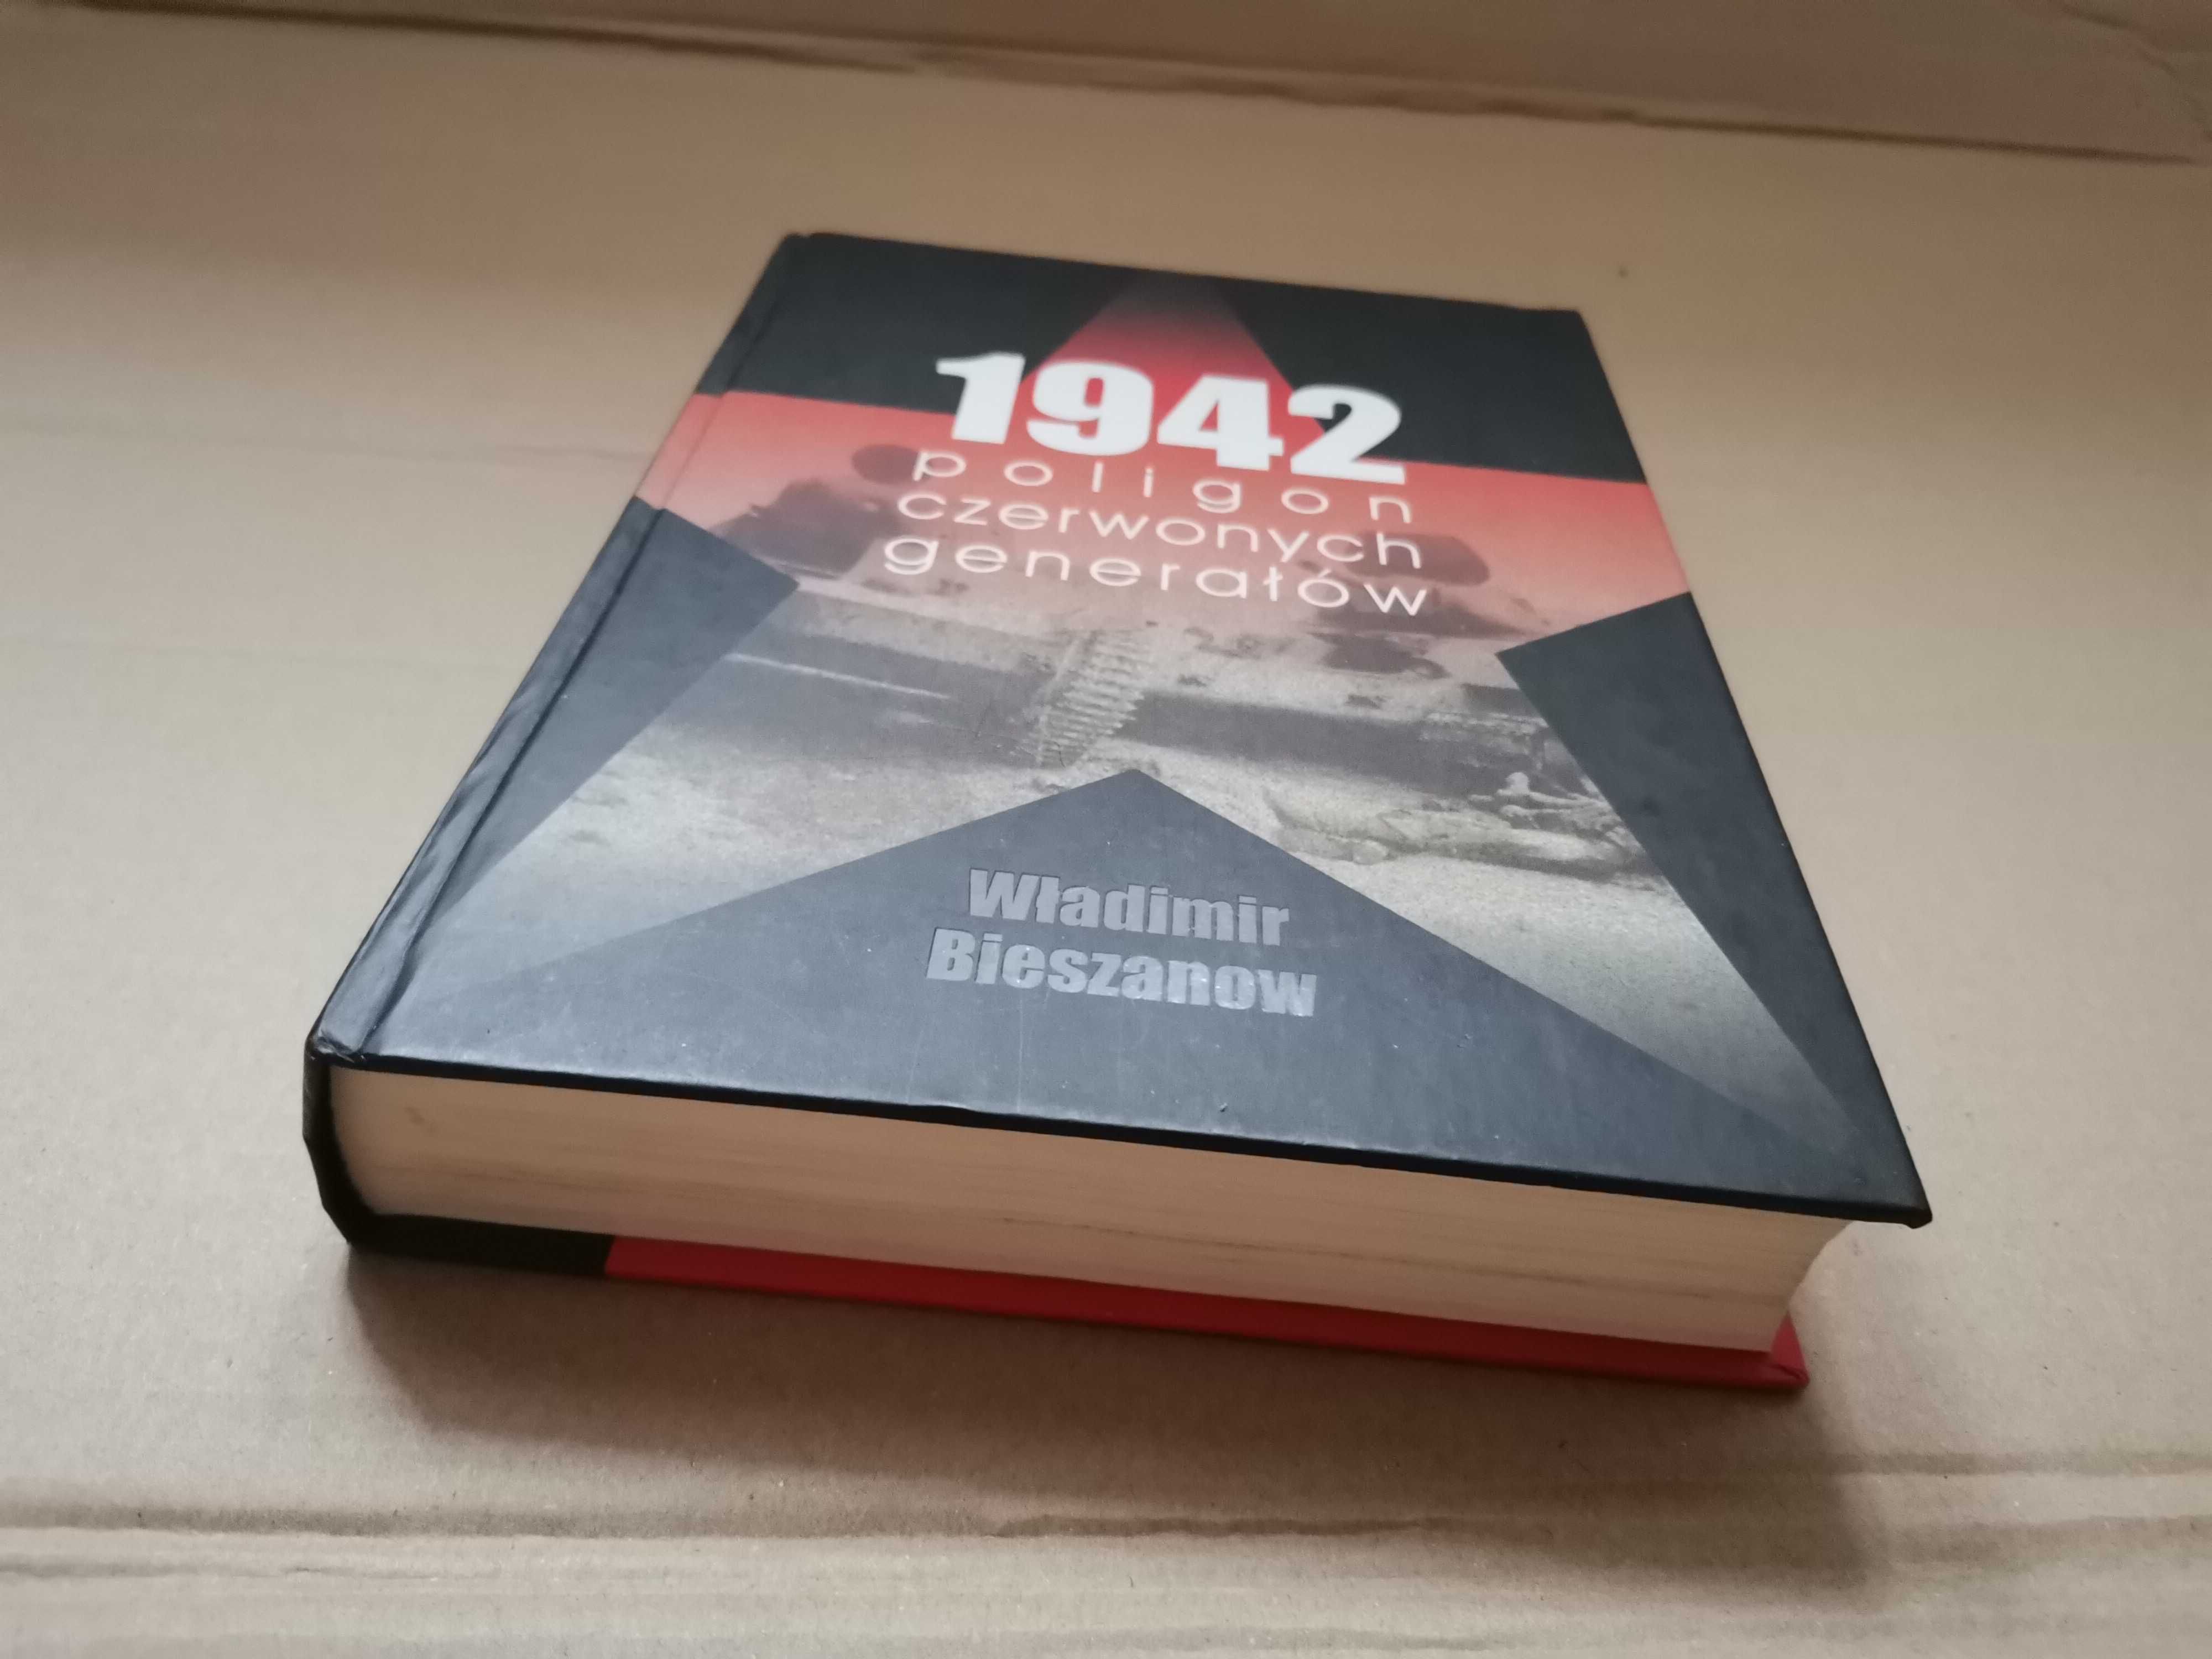 Bieszanow 1942. Poligon czerwonych generałów Real foto